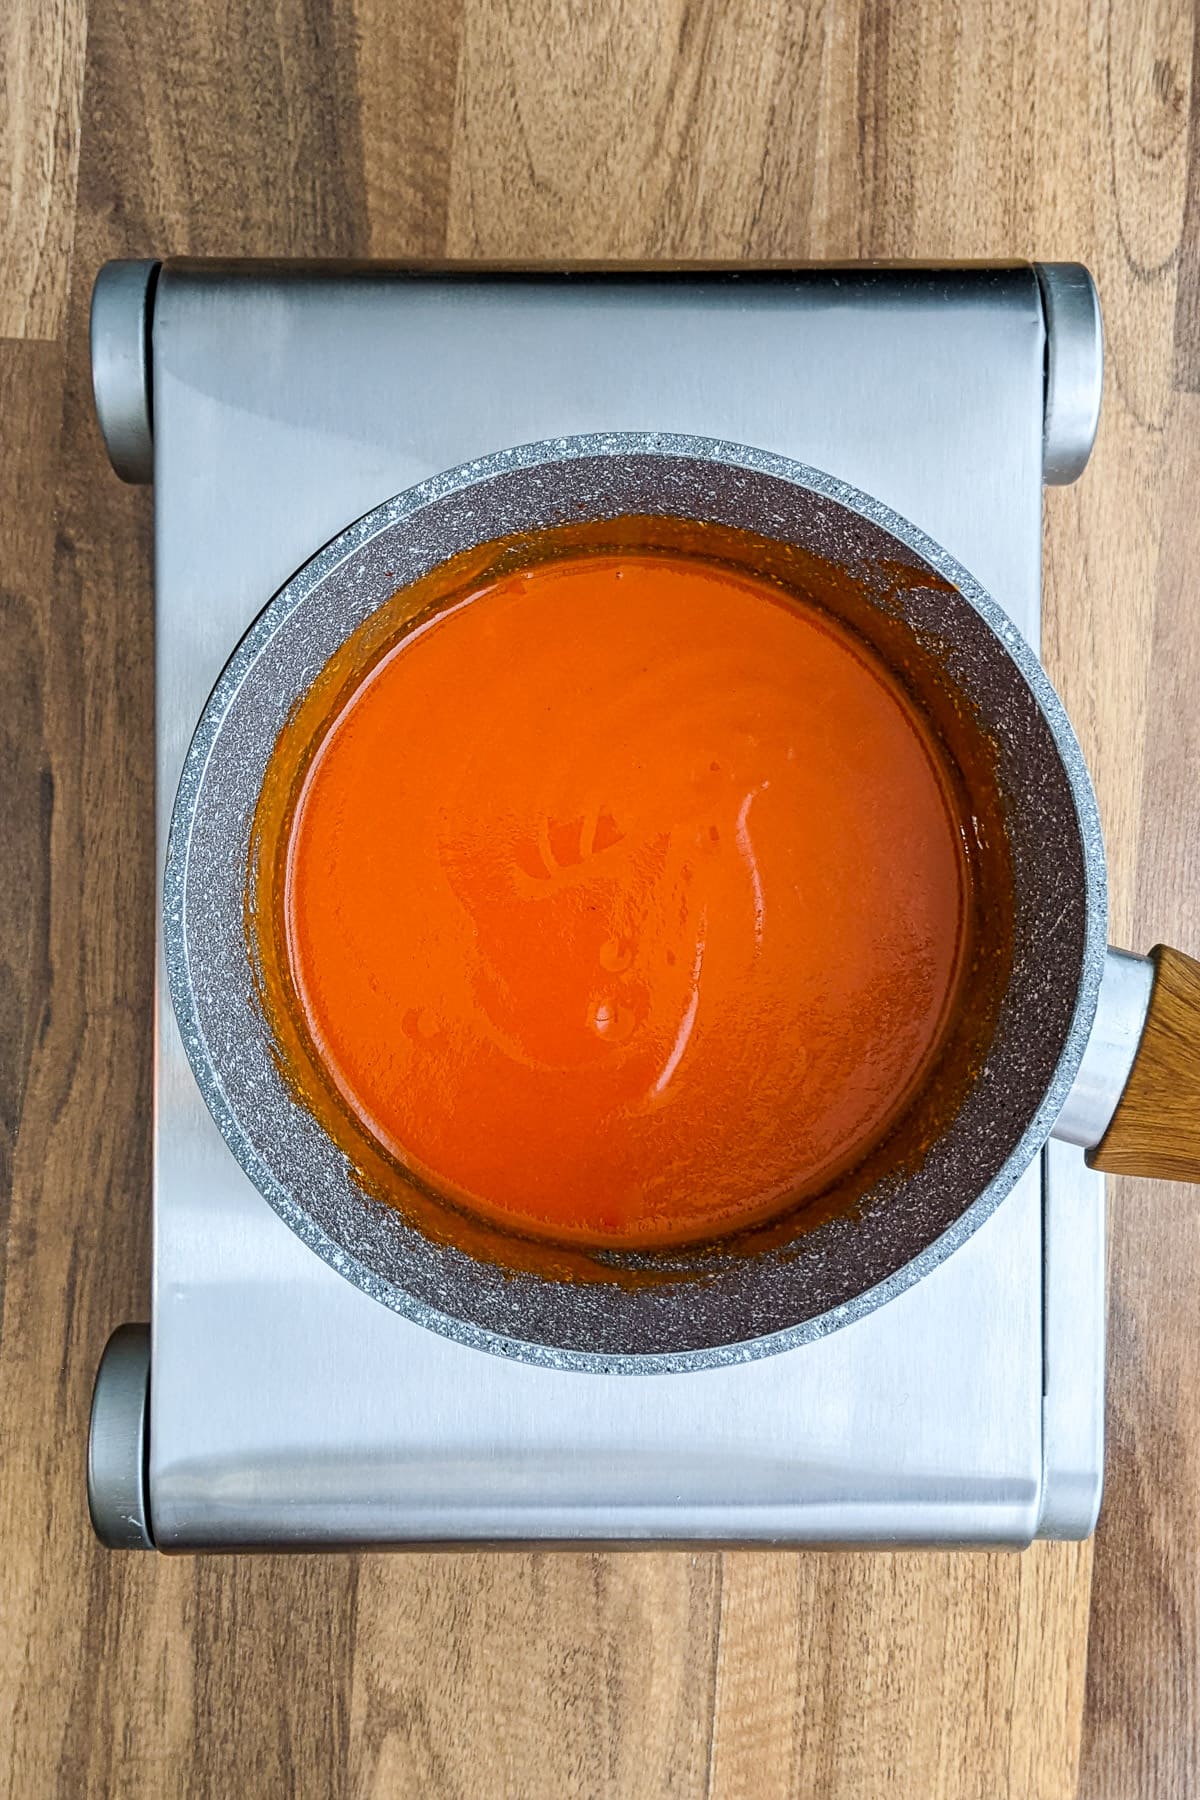 Sauce pan with Homemade Buffalo Sauce on a hob.